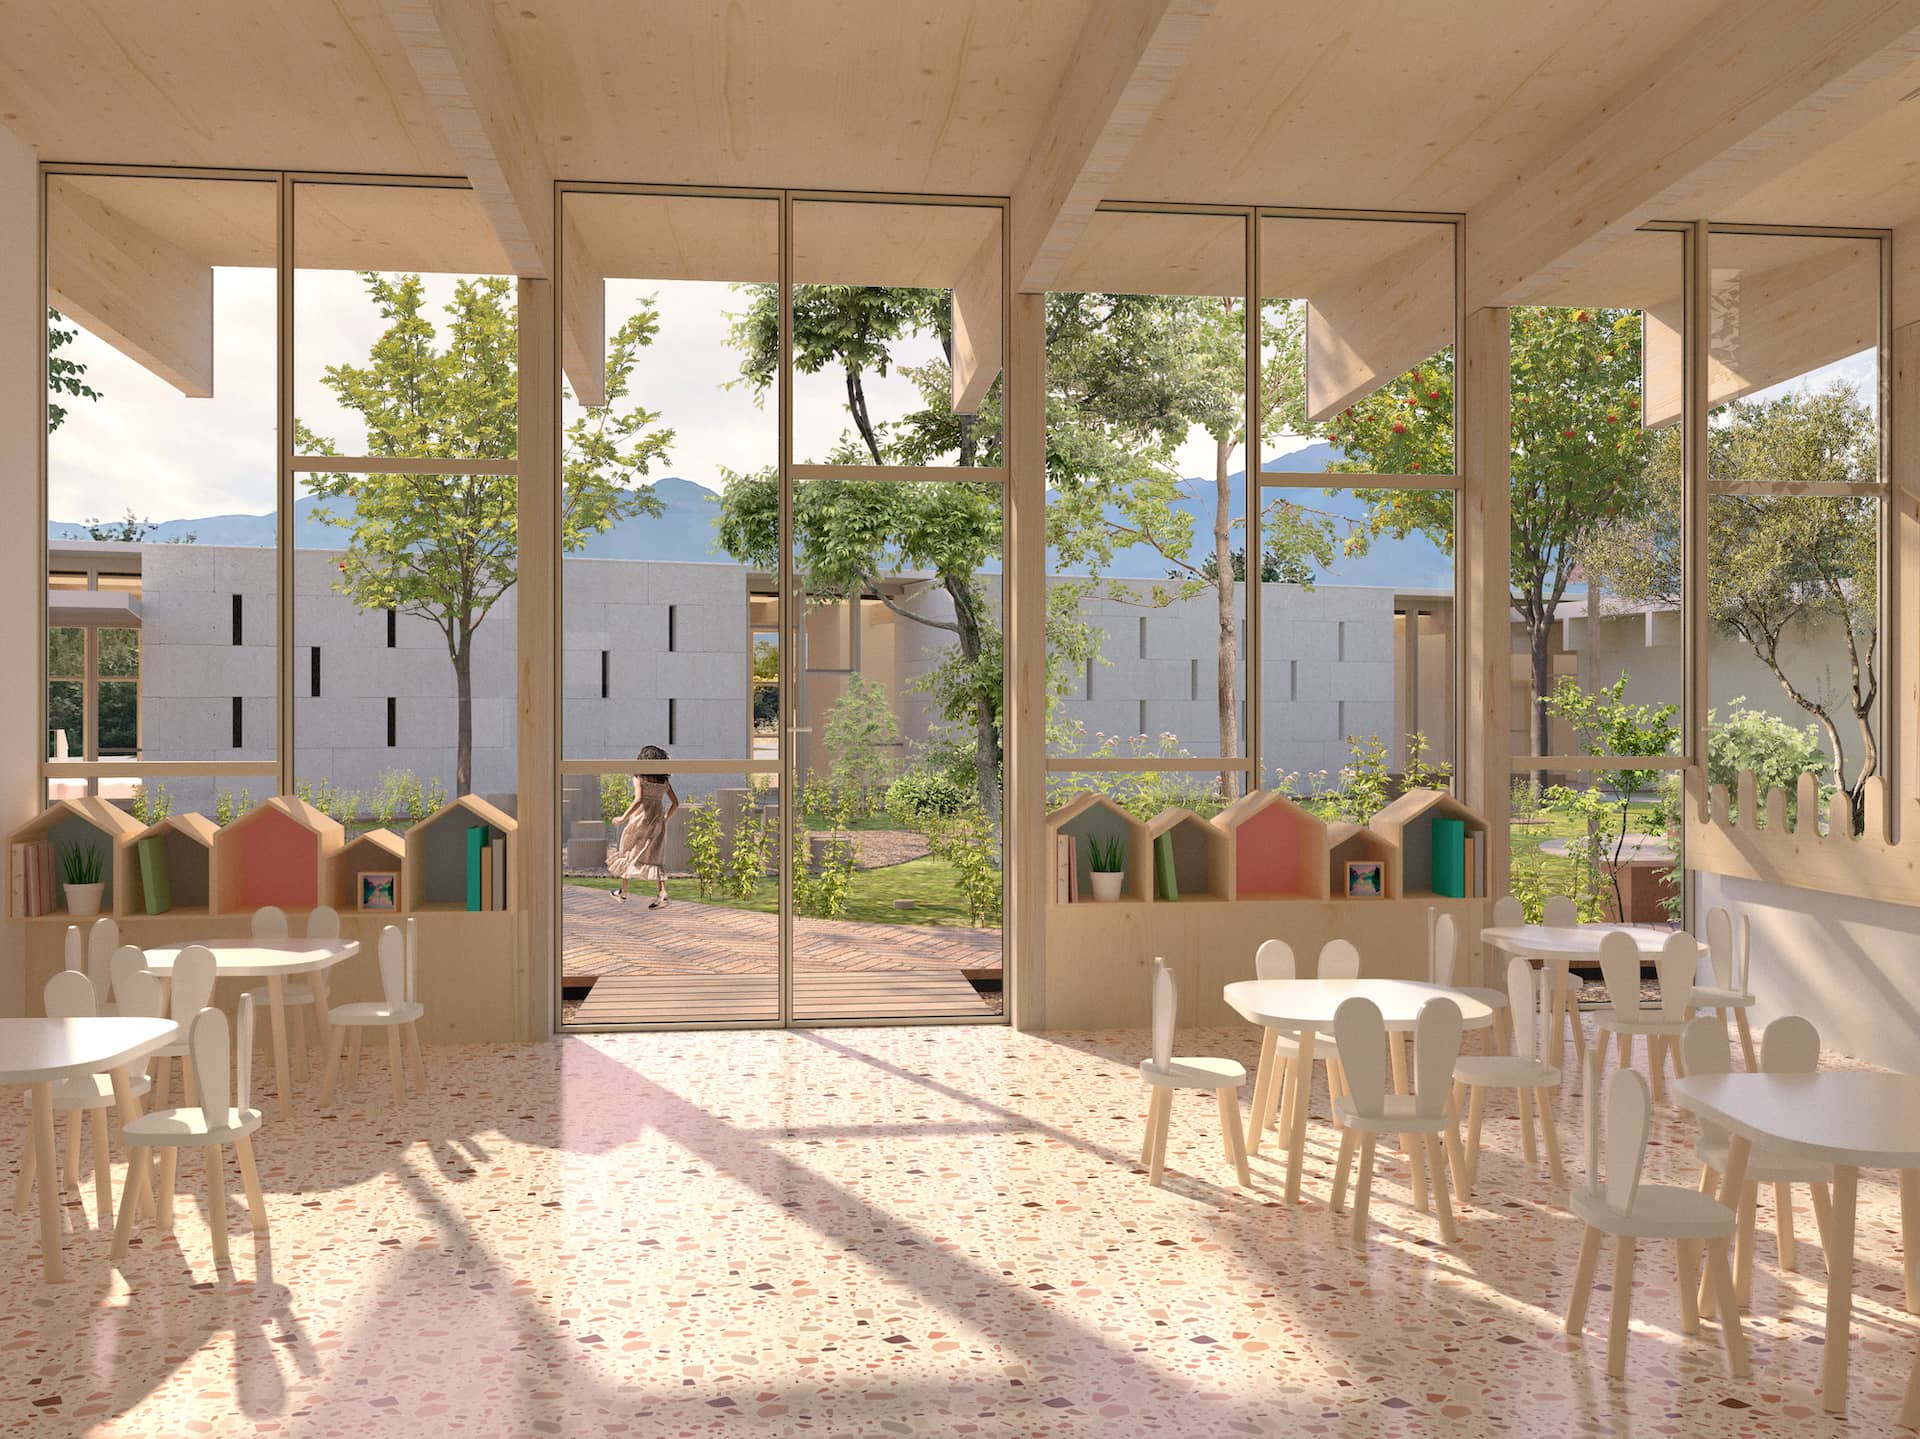 teissier-portal-architectes_vinca-groupe-scolaire_vue-intérieure-restaurant-maternelle